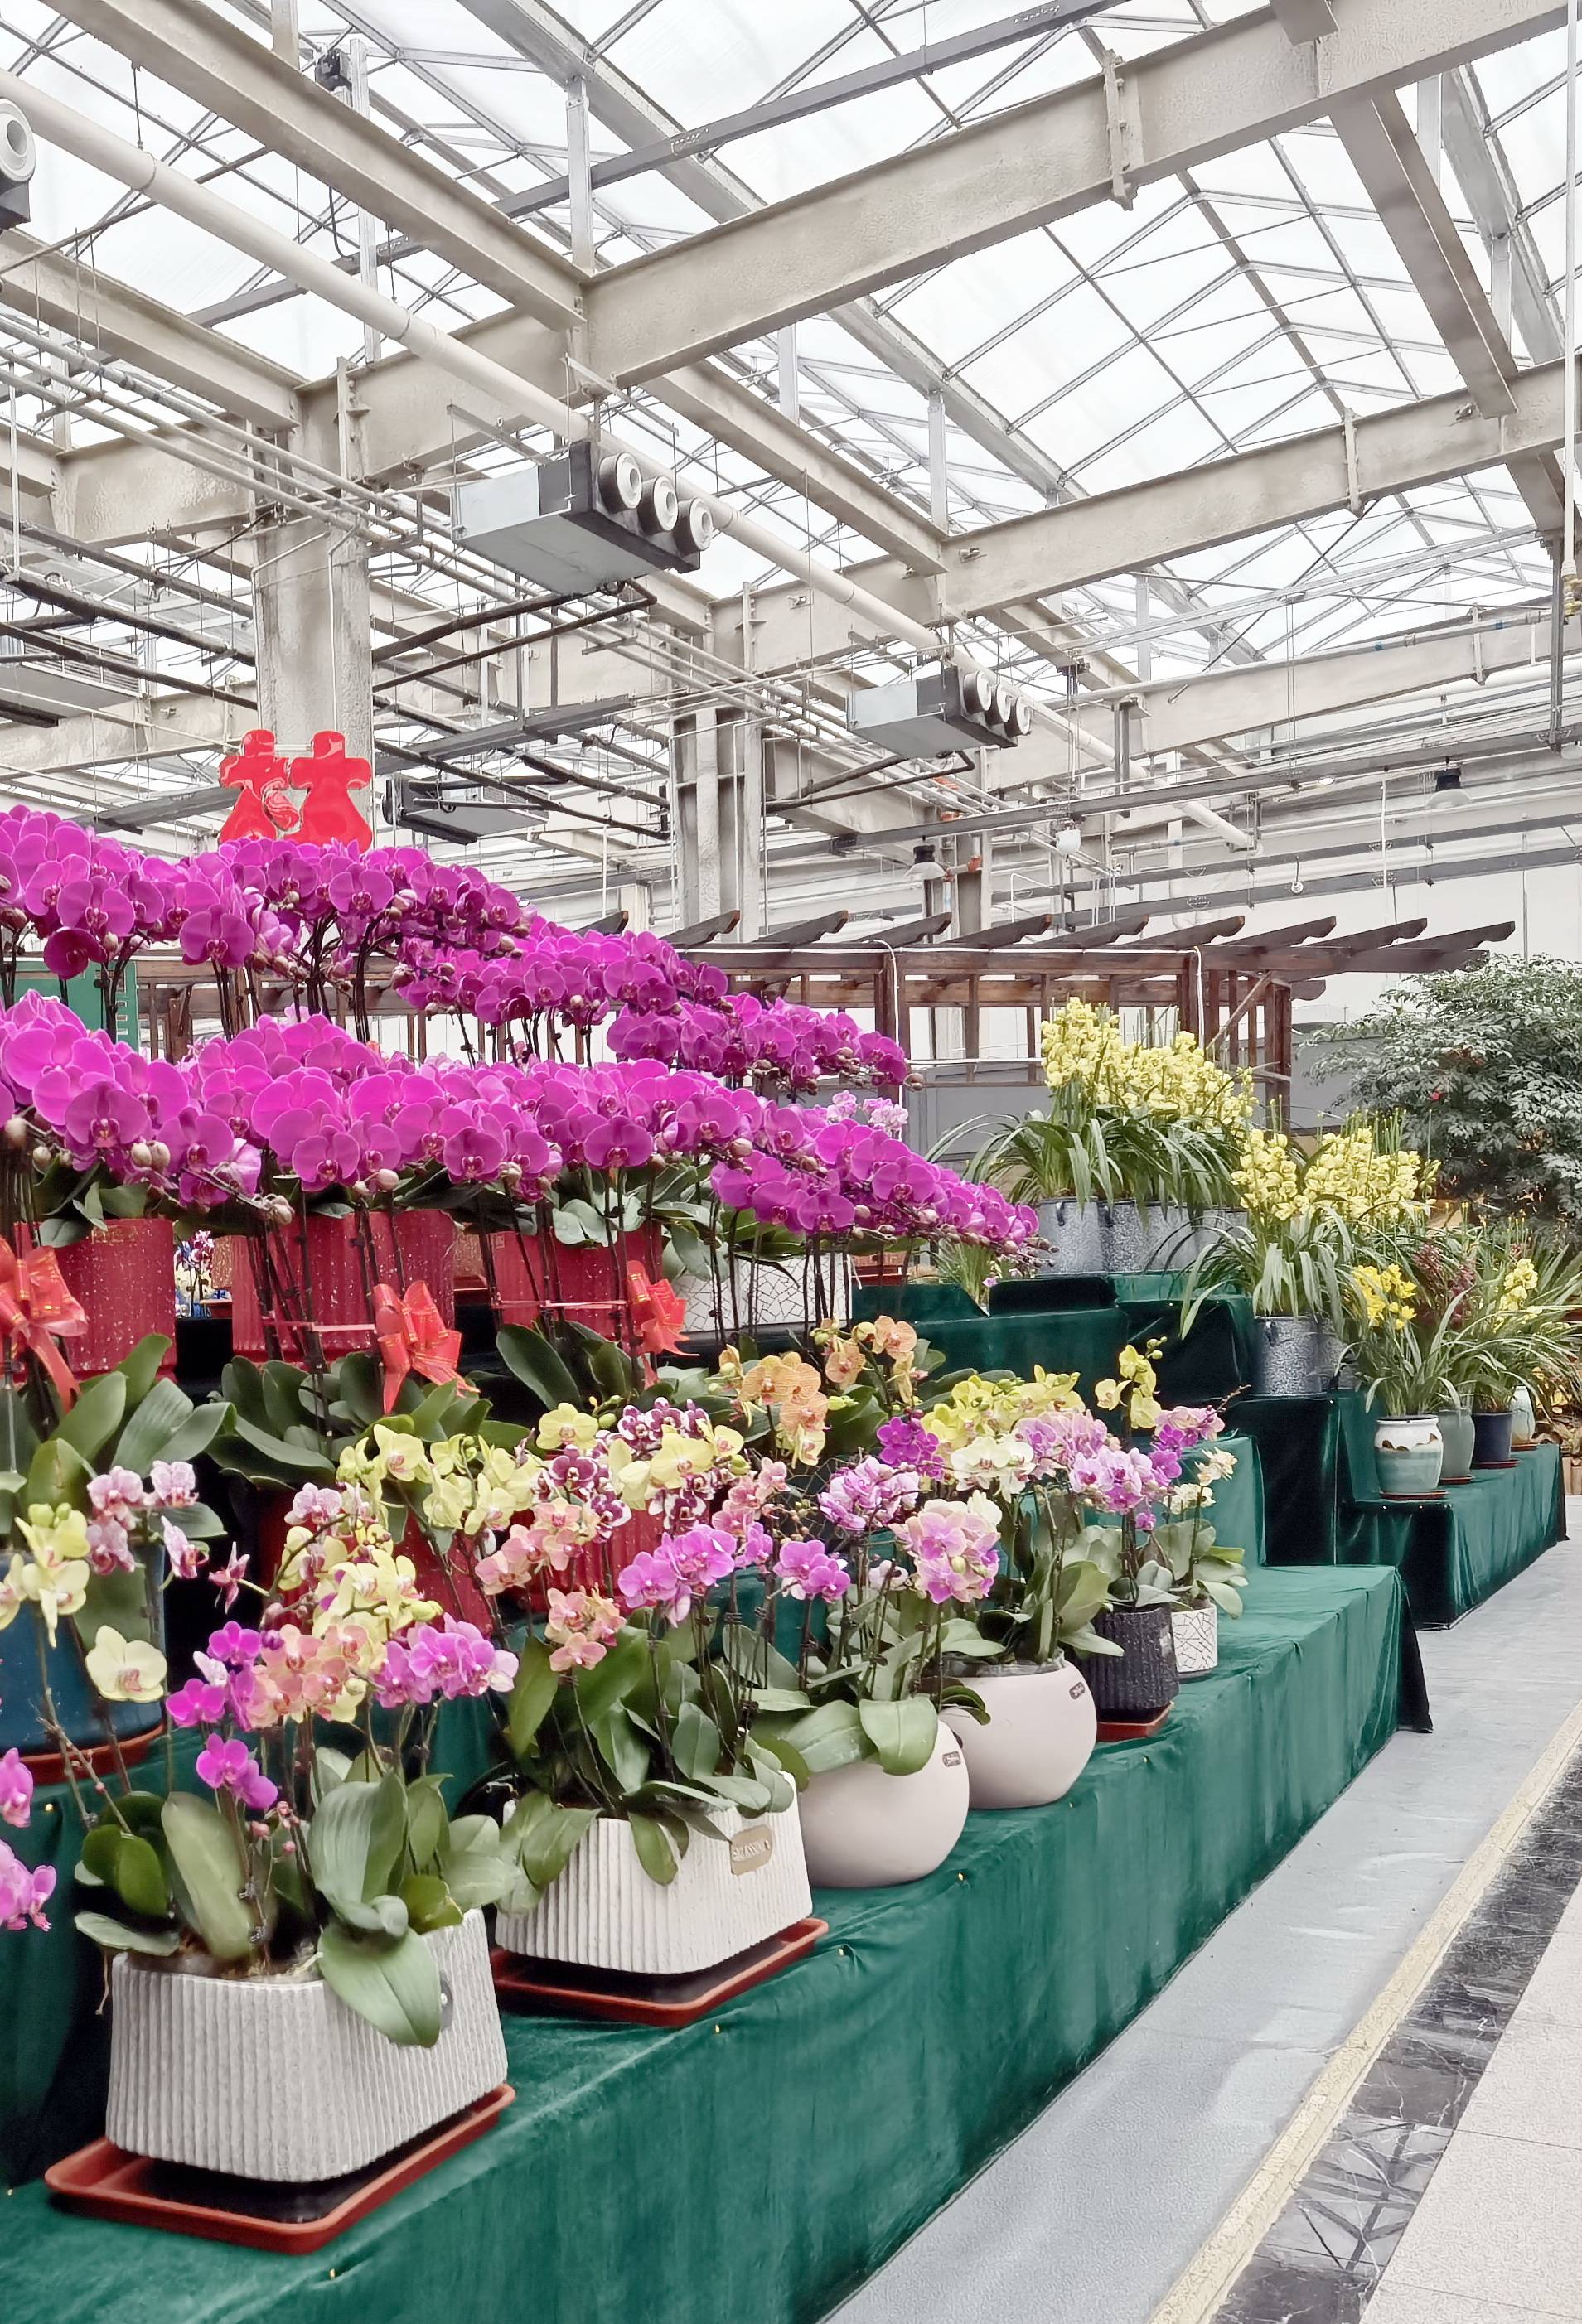 天津大型花卉市场图片